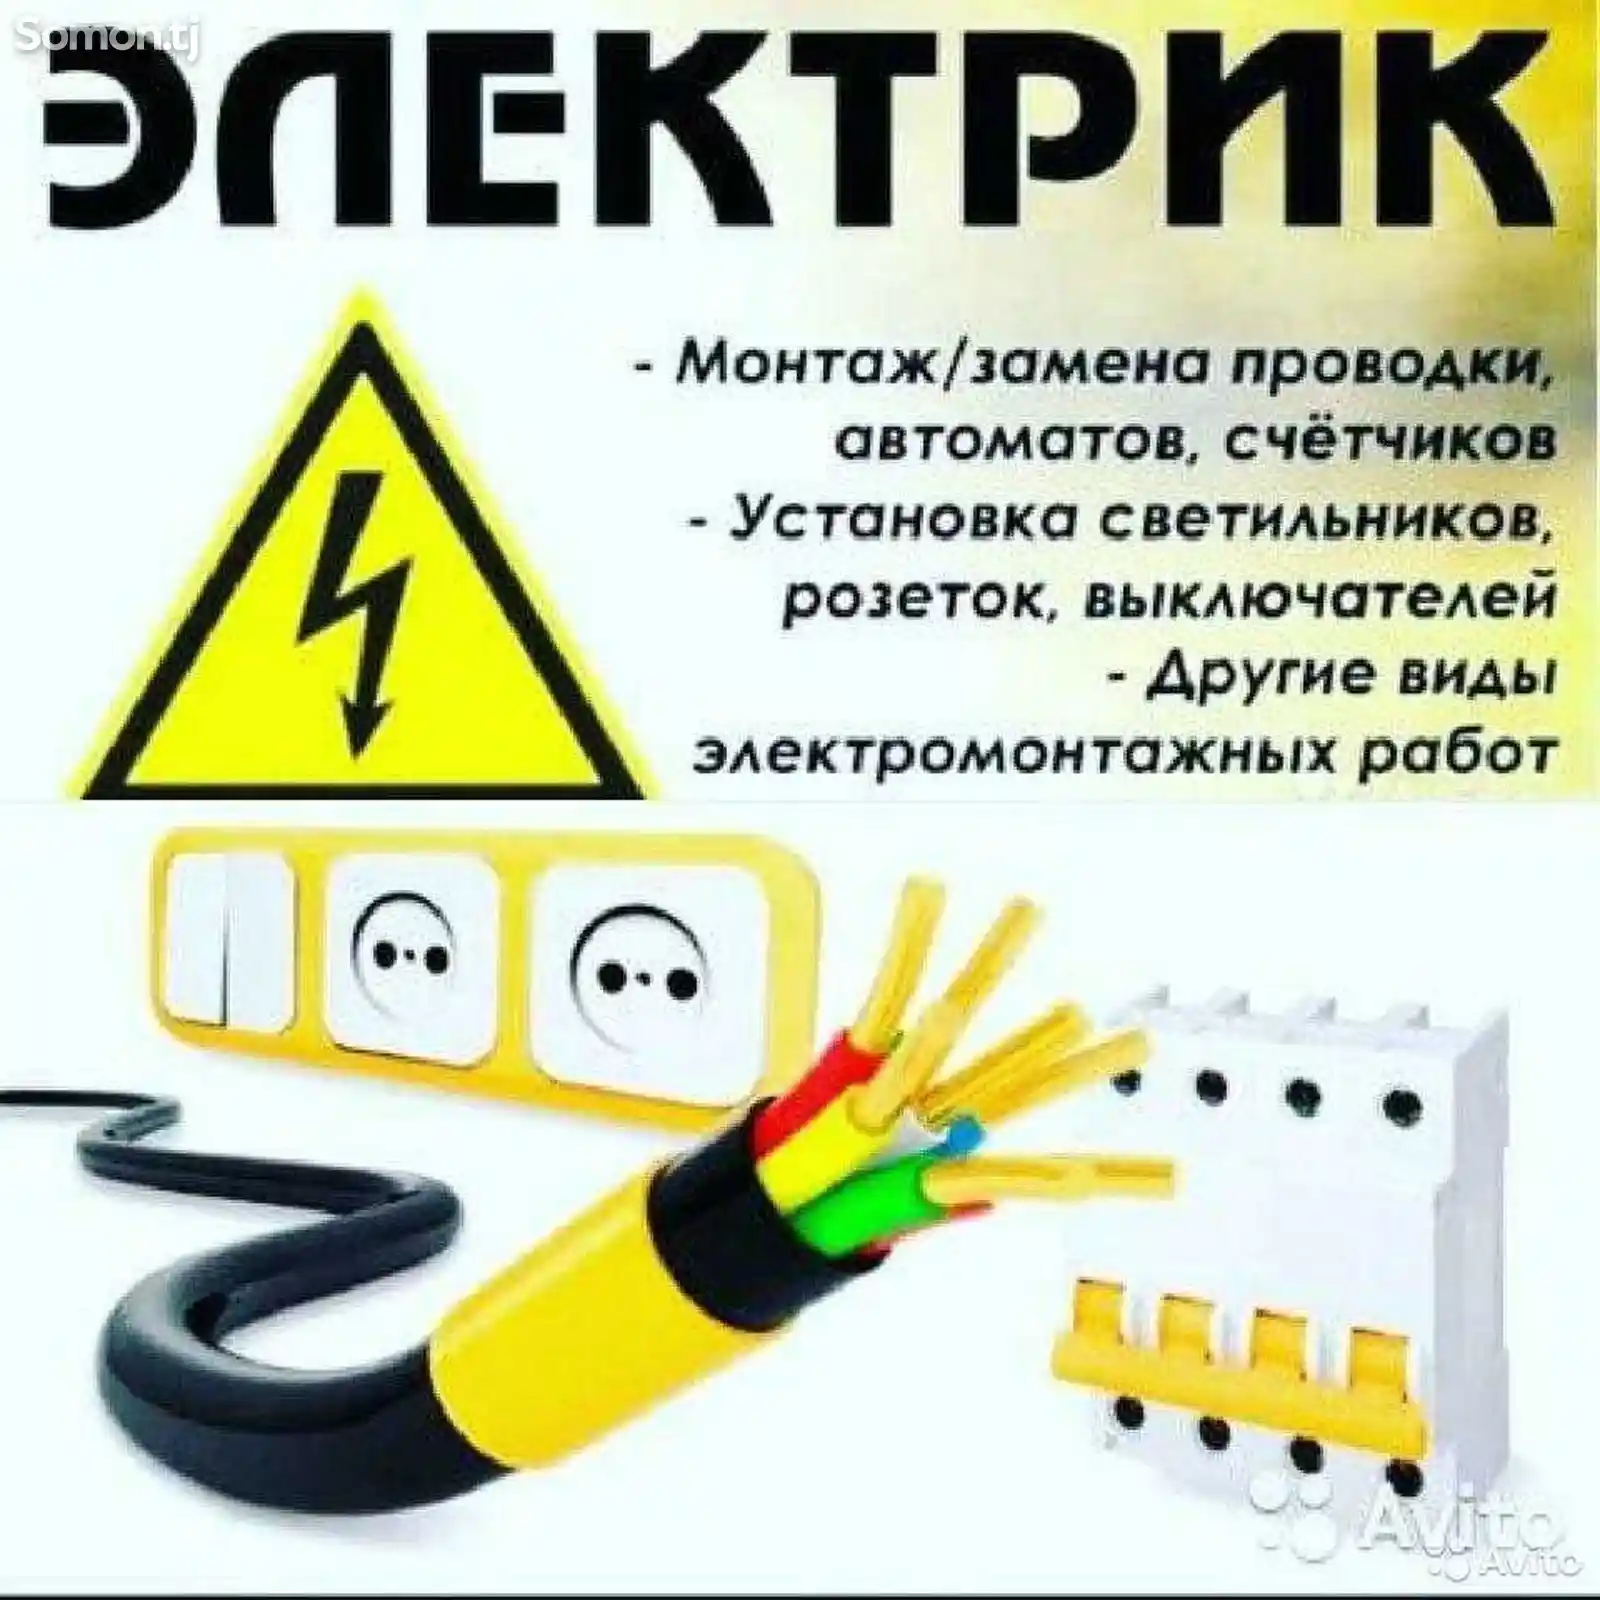 Услуги электрика-1